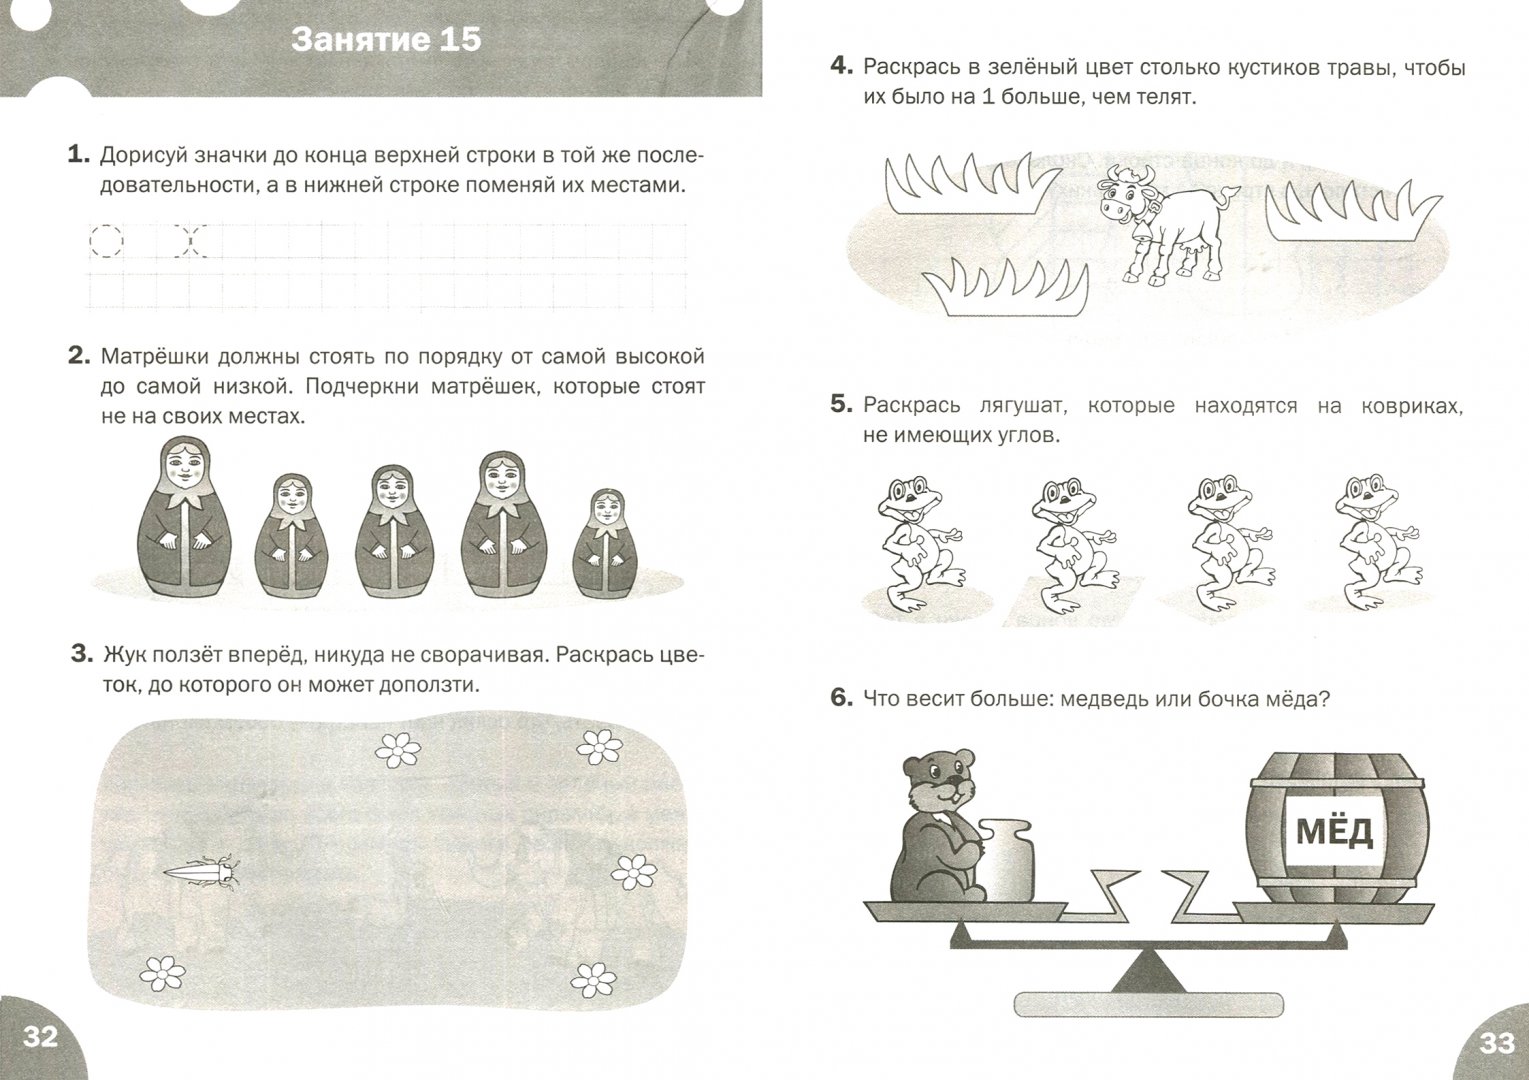 Иллюстрация 1 из 4 для Развиваем логику. Тетрадь для занятий с детьми 6-7 лет - Марк Беденко | Лабиринт - книги. Источник: Лабиринт